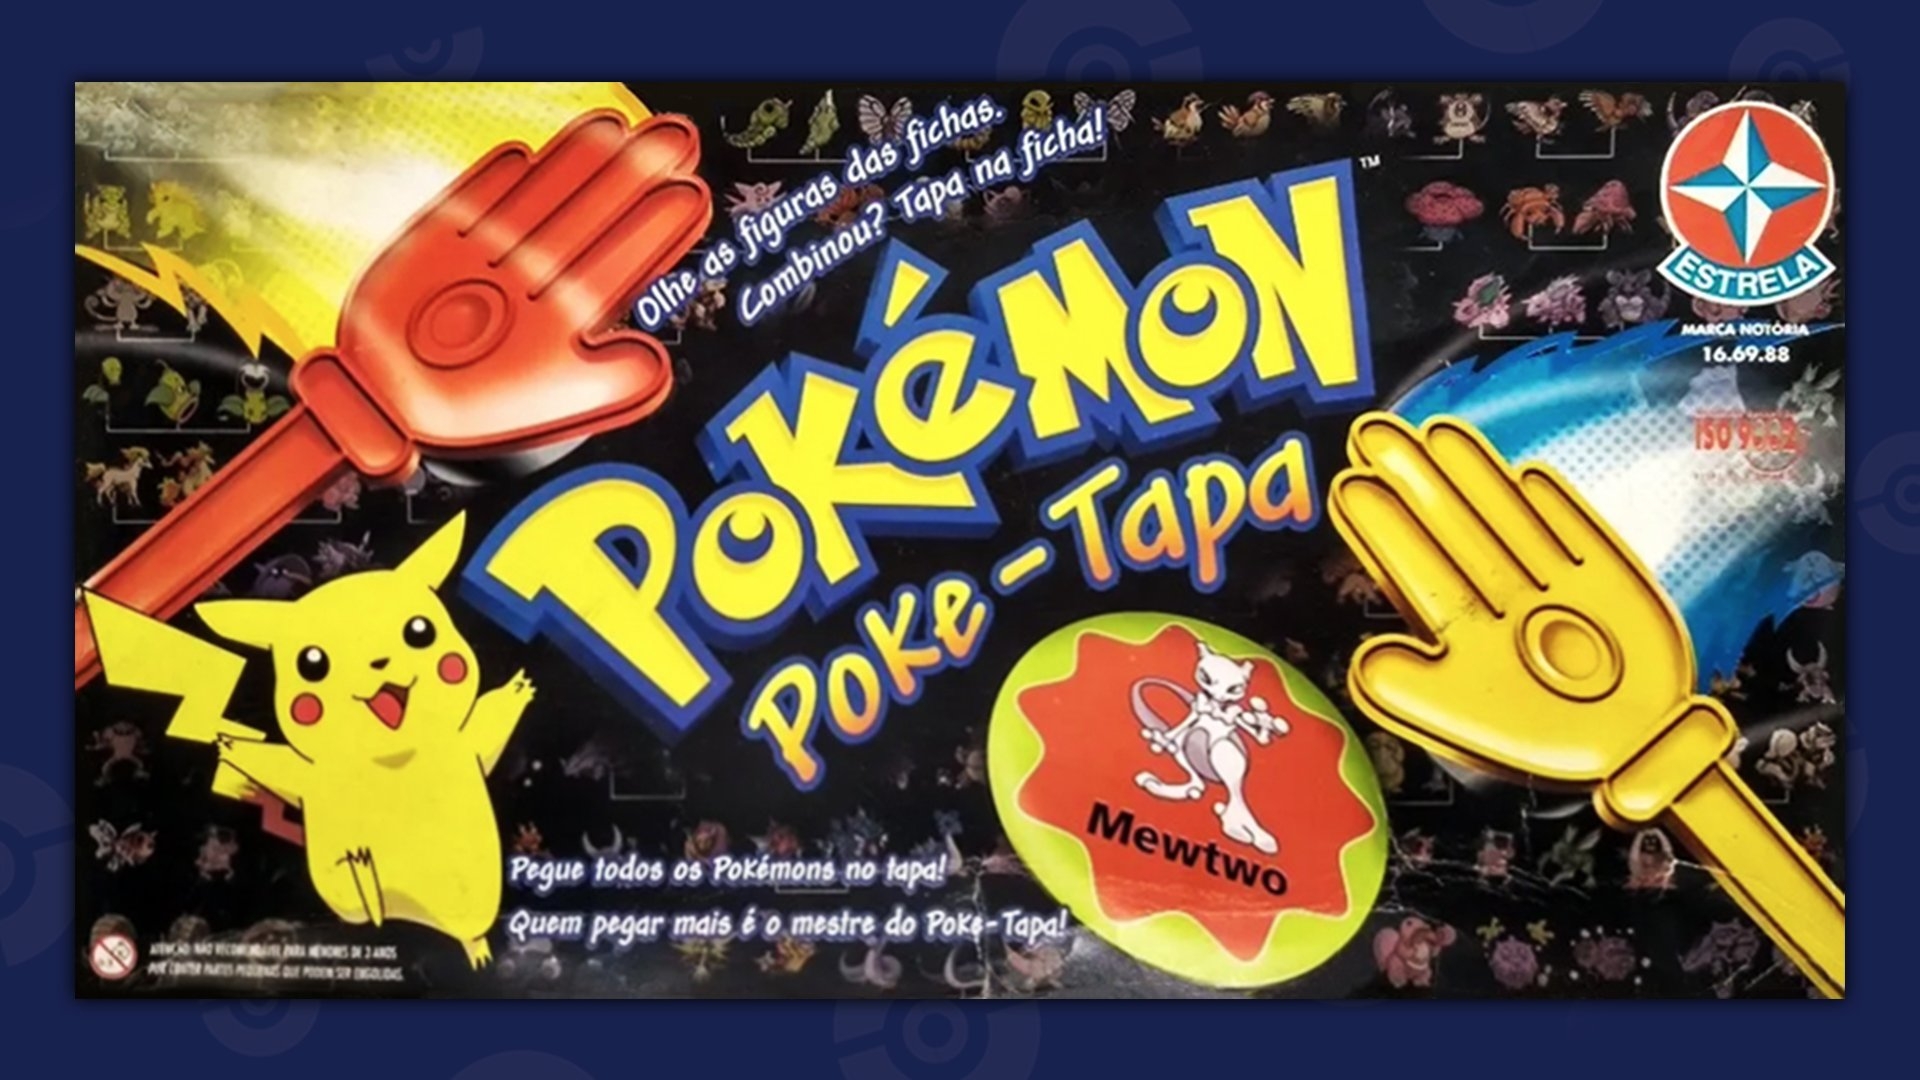 Pokémon Poke-Tapa packet shot